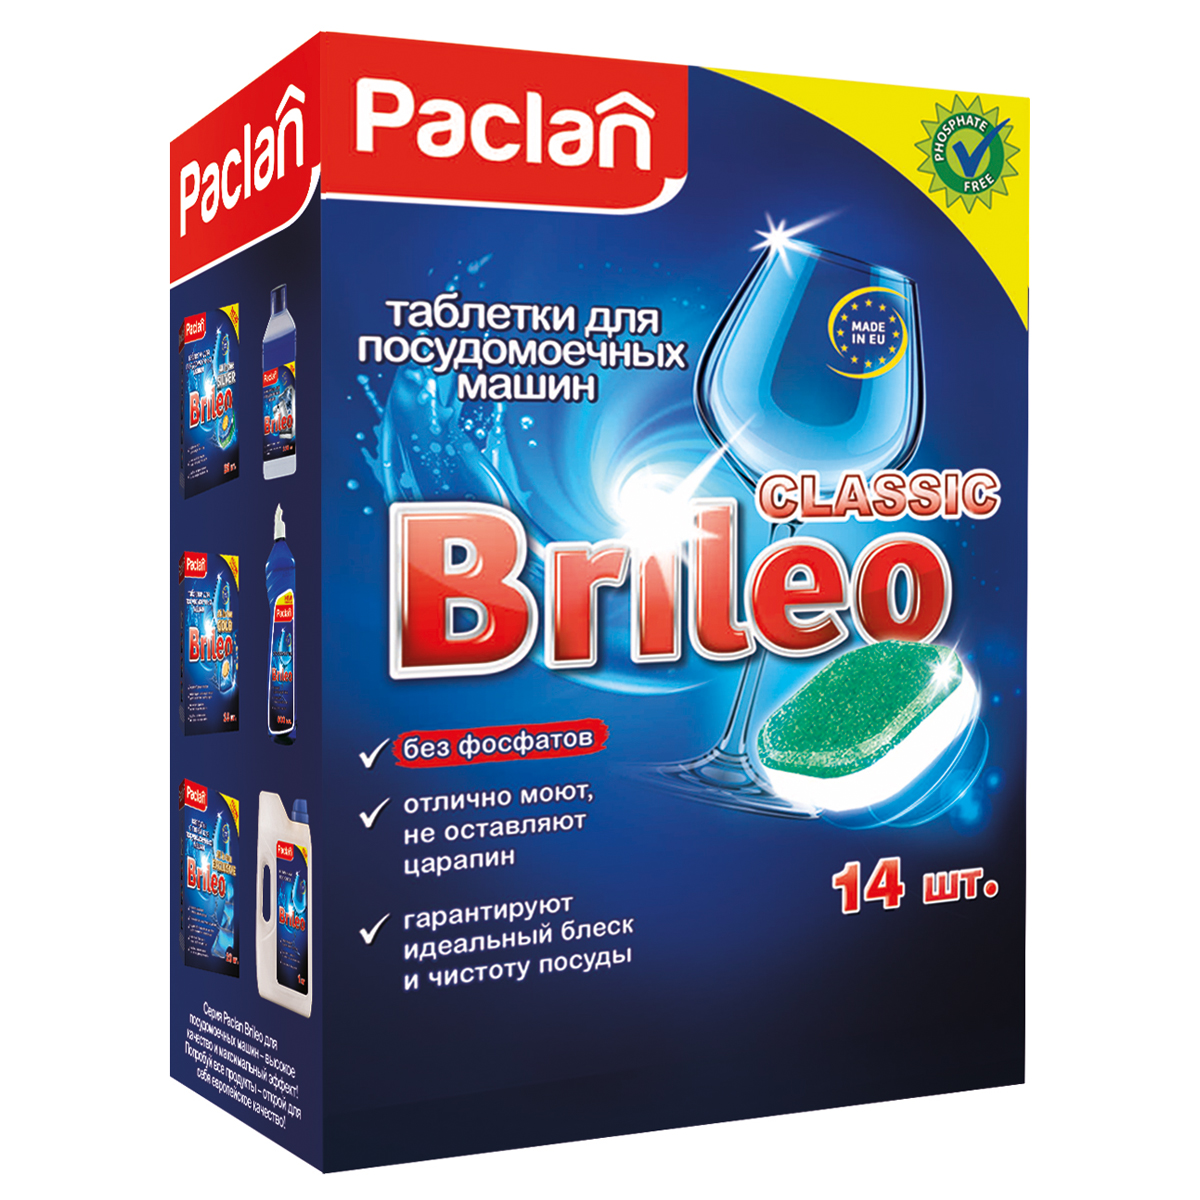 Таблетки для посудомоечной машины Paclan "Brileo. Classic", 14шт. 419240